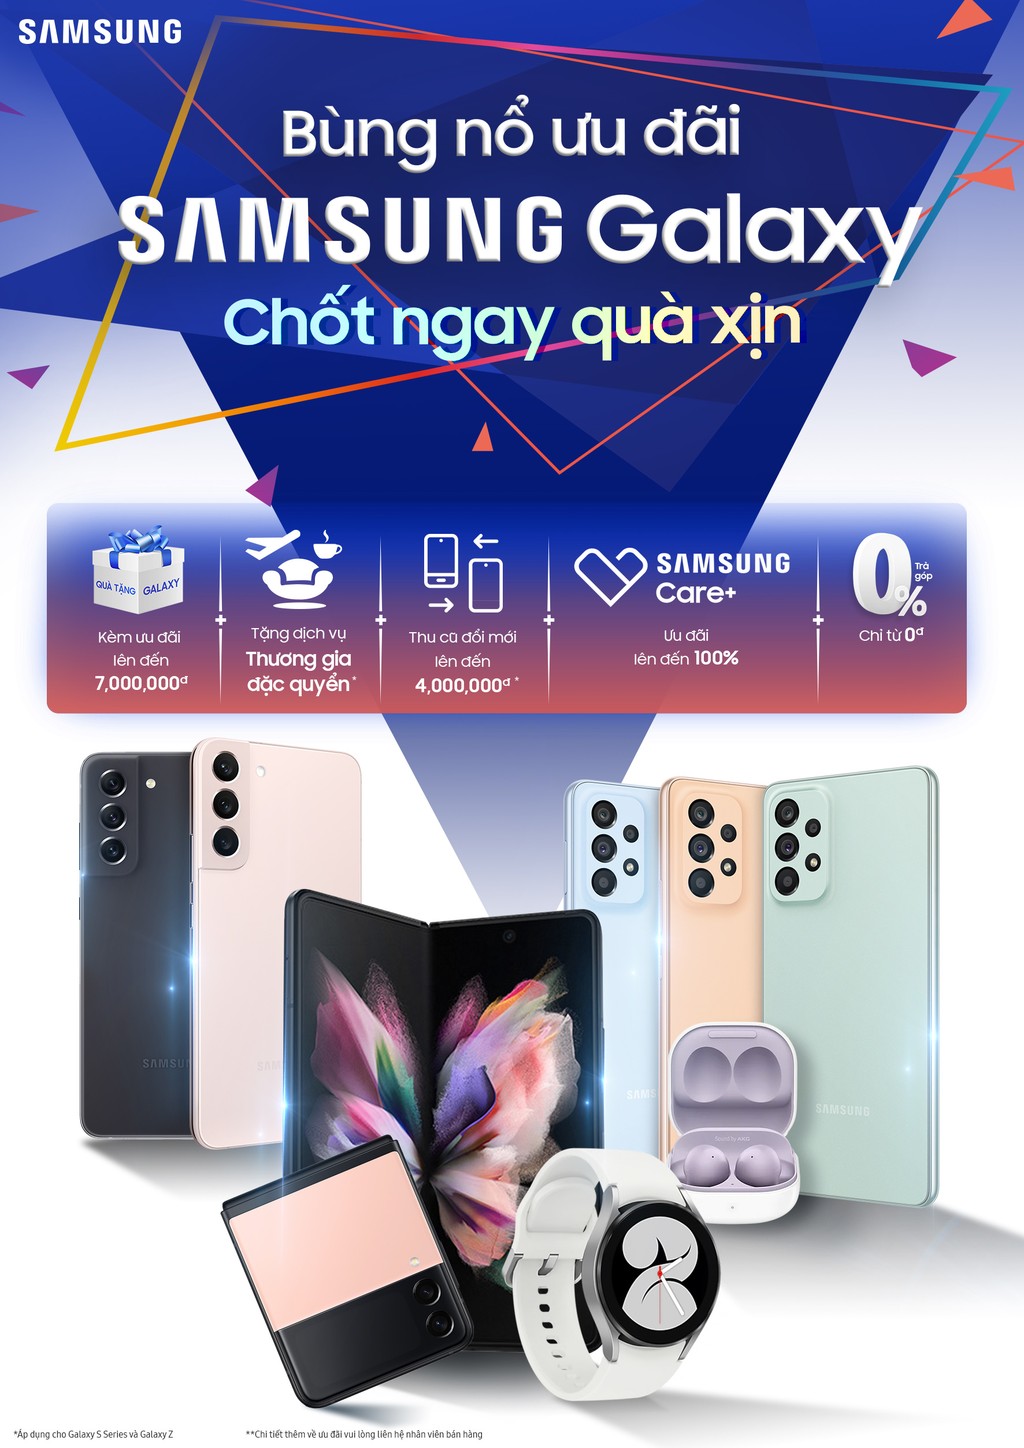 Bùng nổ ưu đãi sản phẩm Samsung Galaxy 2022 ảnh 1